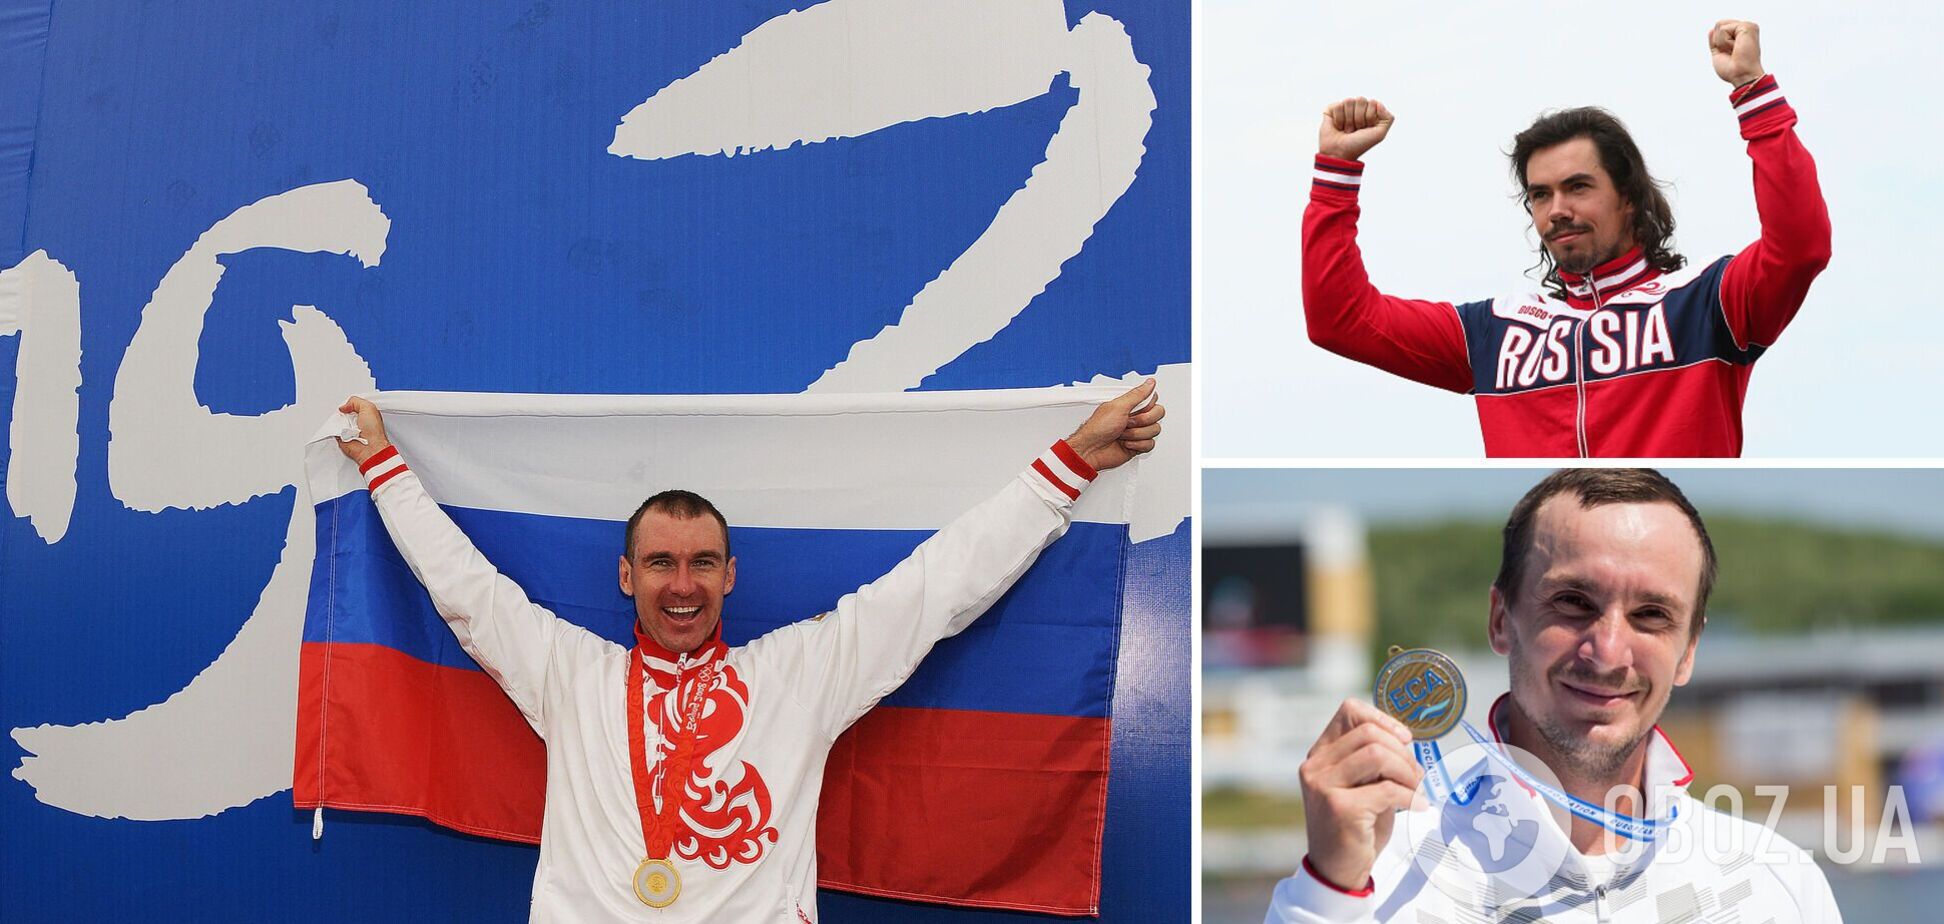 Очередная международная федерация вернула Россию в мировой спорт